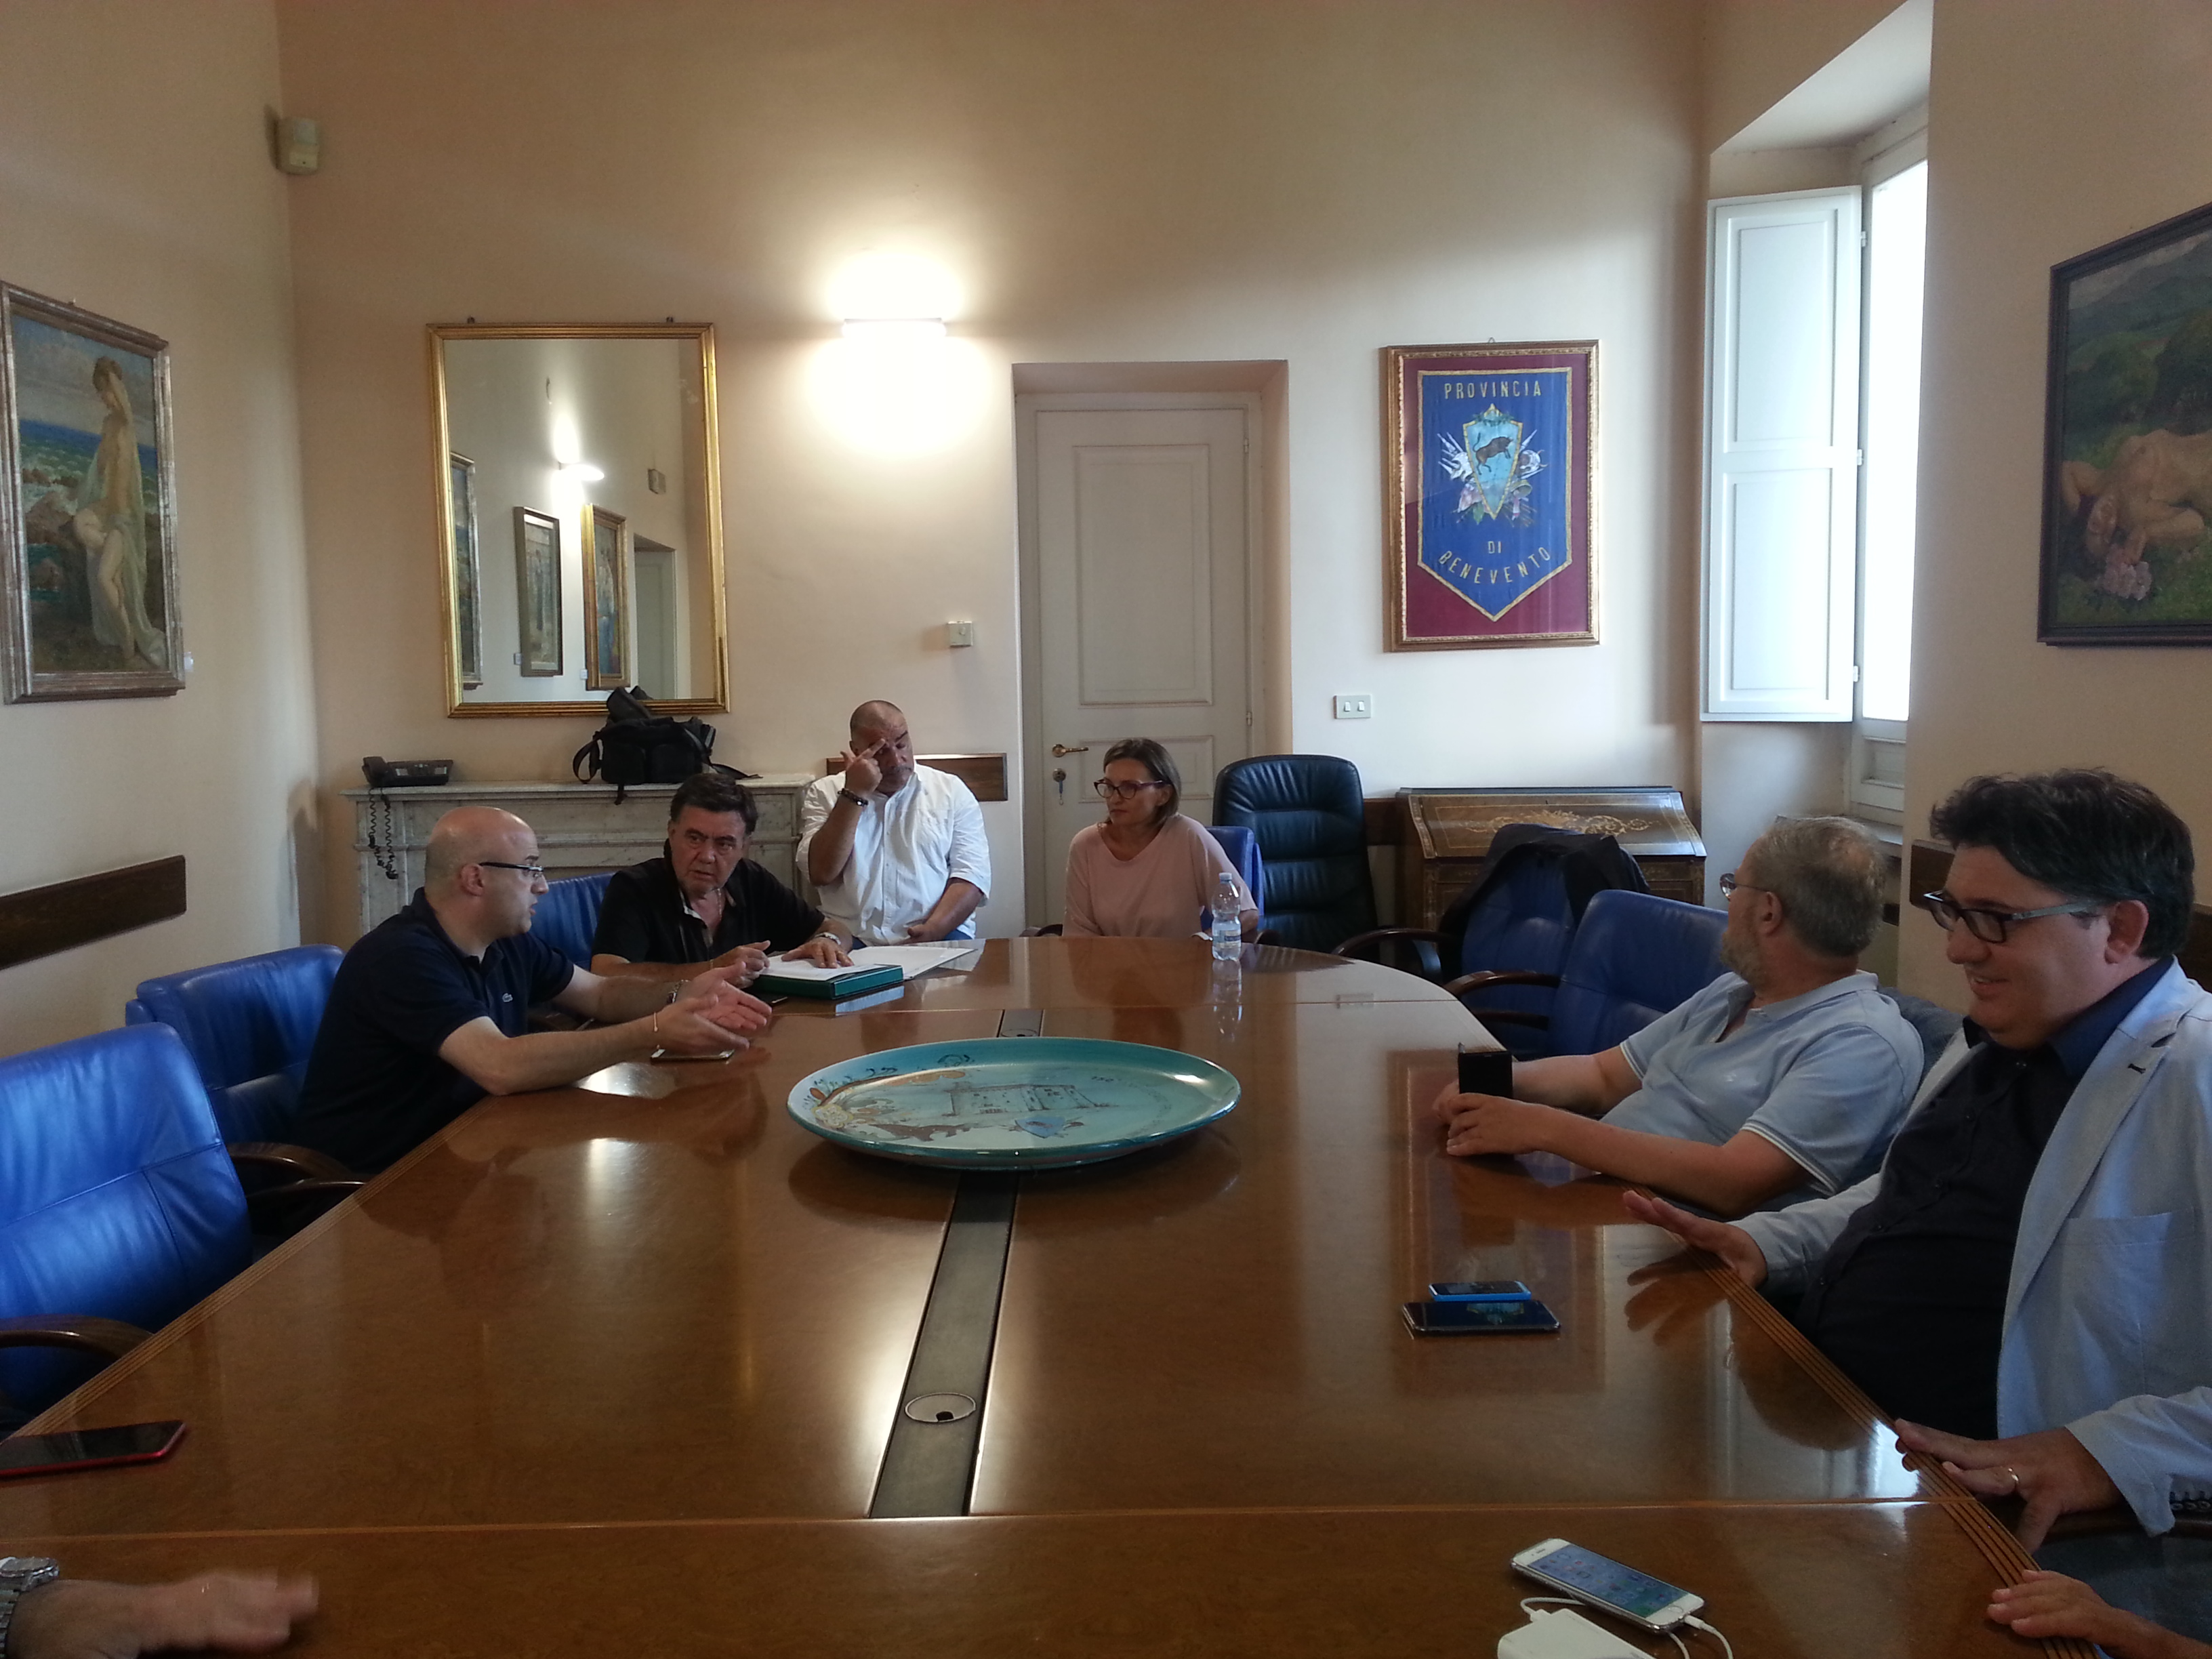 Benevento| Ato, si dimette il presidente Tozzi